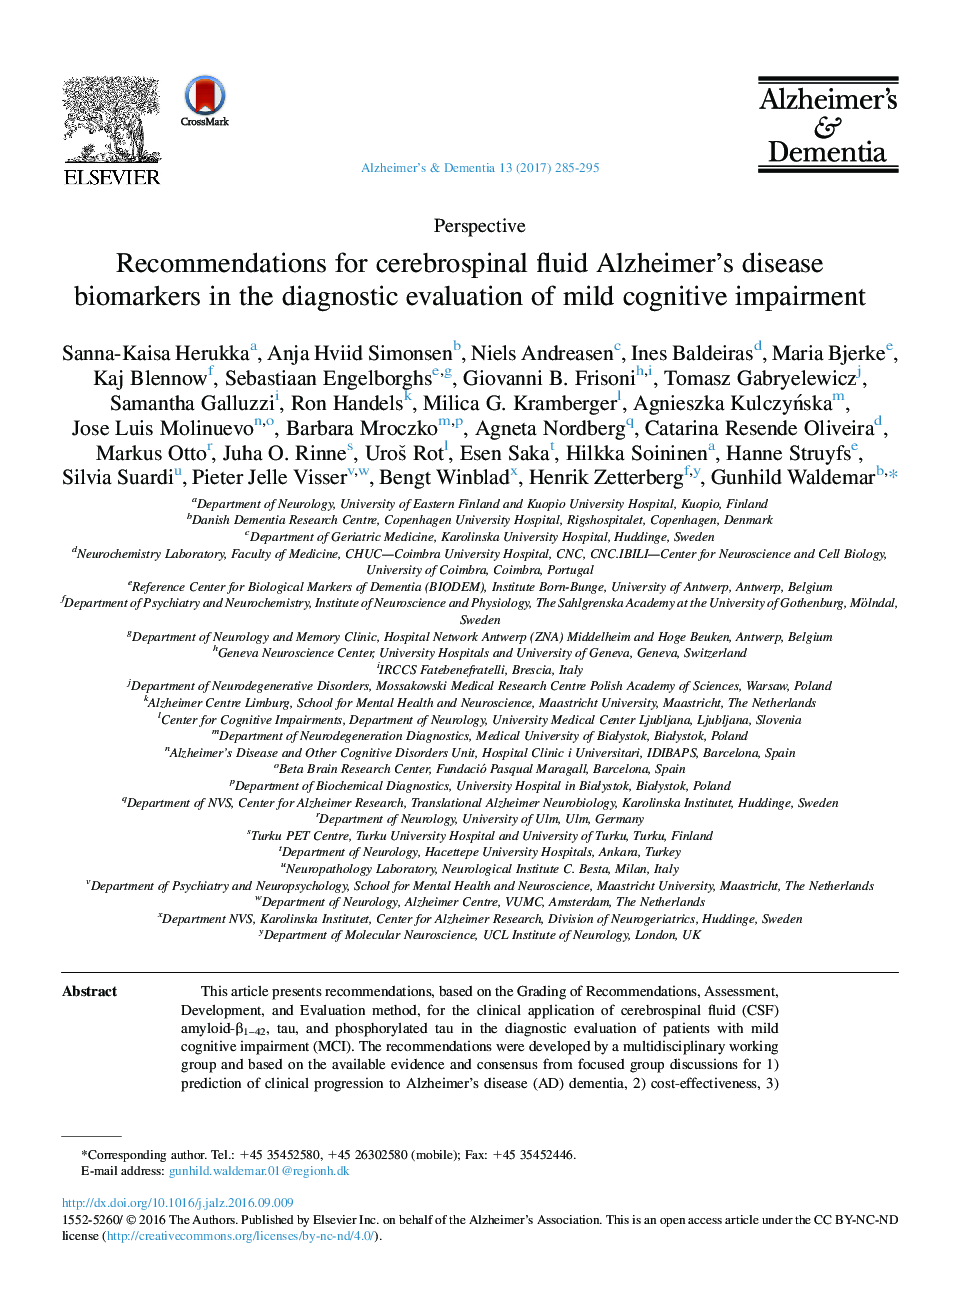 چشم انداز توصیه های مایع مغزی و نخاعی بیومارکرهای بیماری آلزایمر در ارزیابی تشخیص اختلال شناختی خفیف 